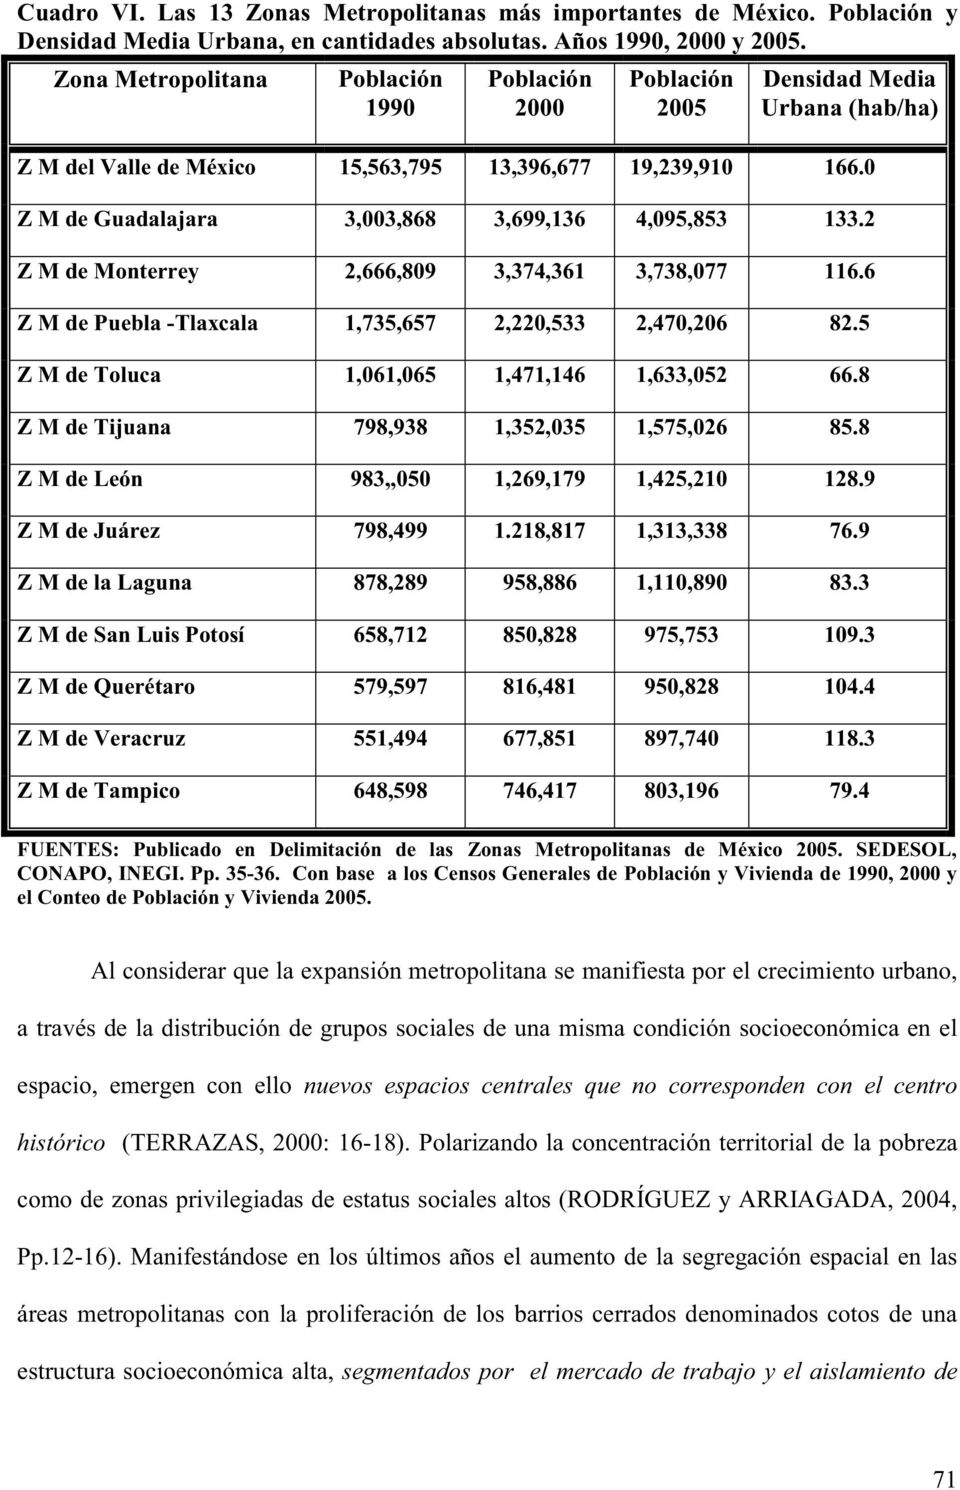 0 Z M de Guadalajara 3,003,868 3,699,136 4,095,853 133.2 Z M de Monterrey 2,666,809 3,374,361 3,738,077 116.6 Z M de Puebla -Tlaxcala 1,735,657 2,220,533 2,470,206 82.